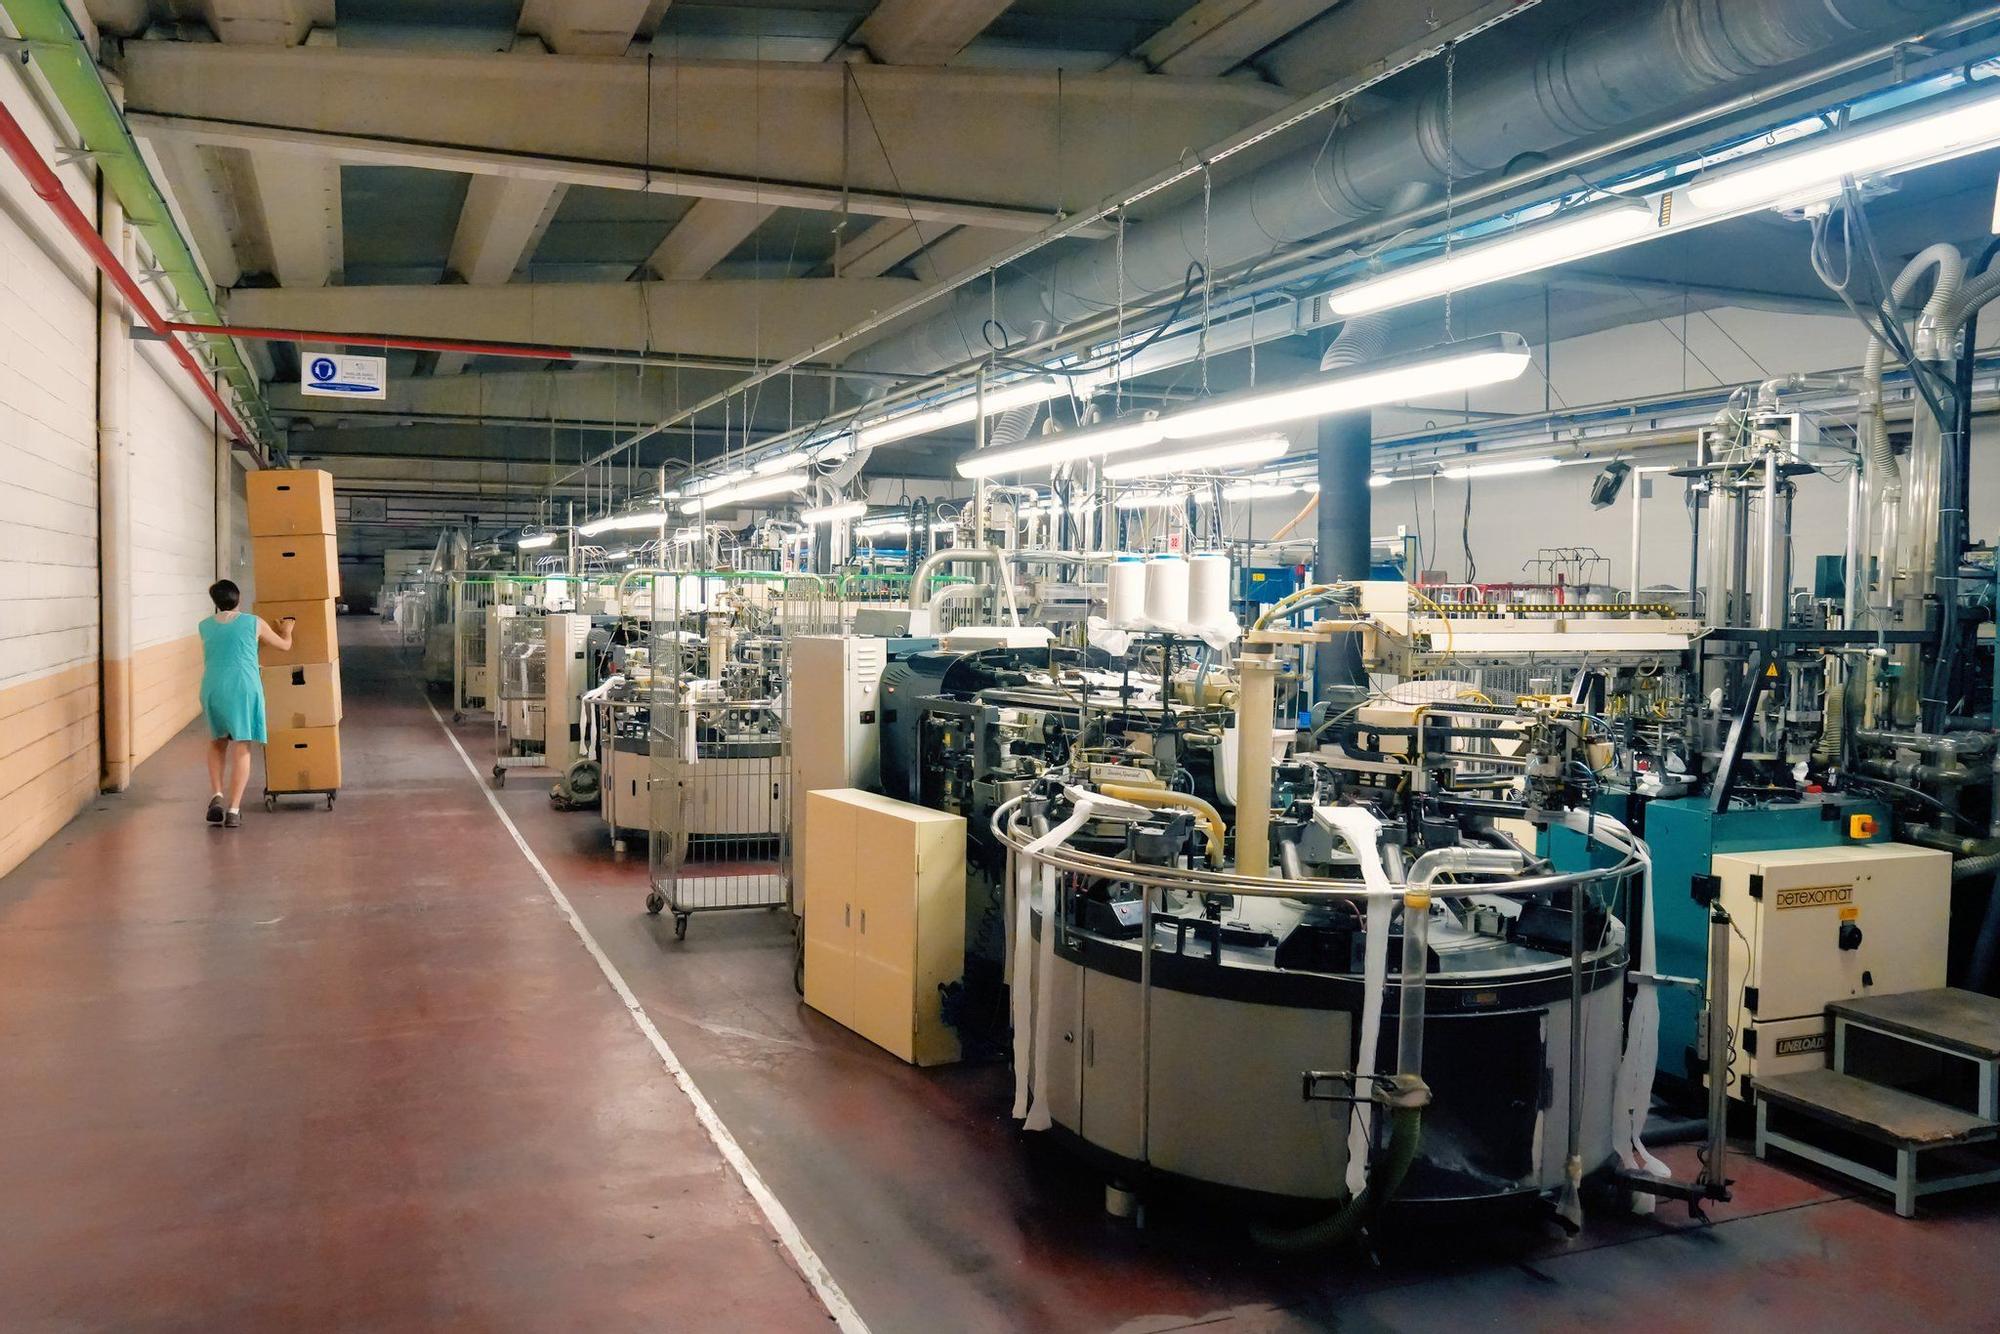 Adiós a Marie Claire: La fábrica de medias que nació en el interior de Castellón hace 116 años